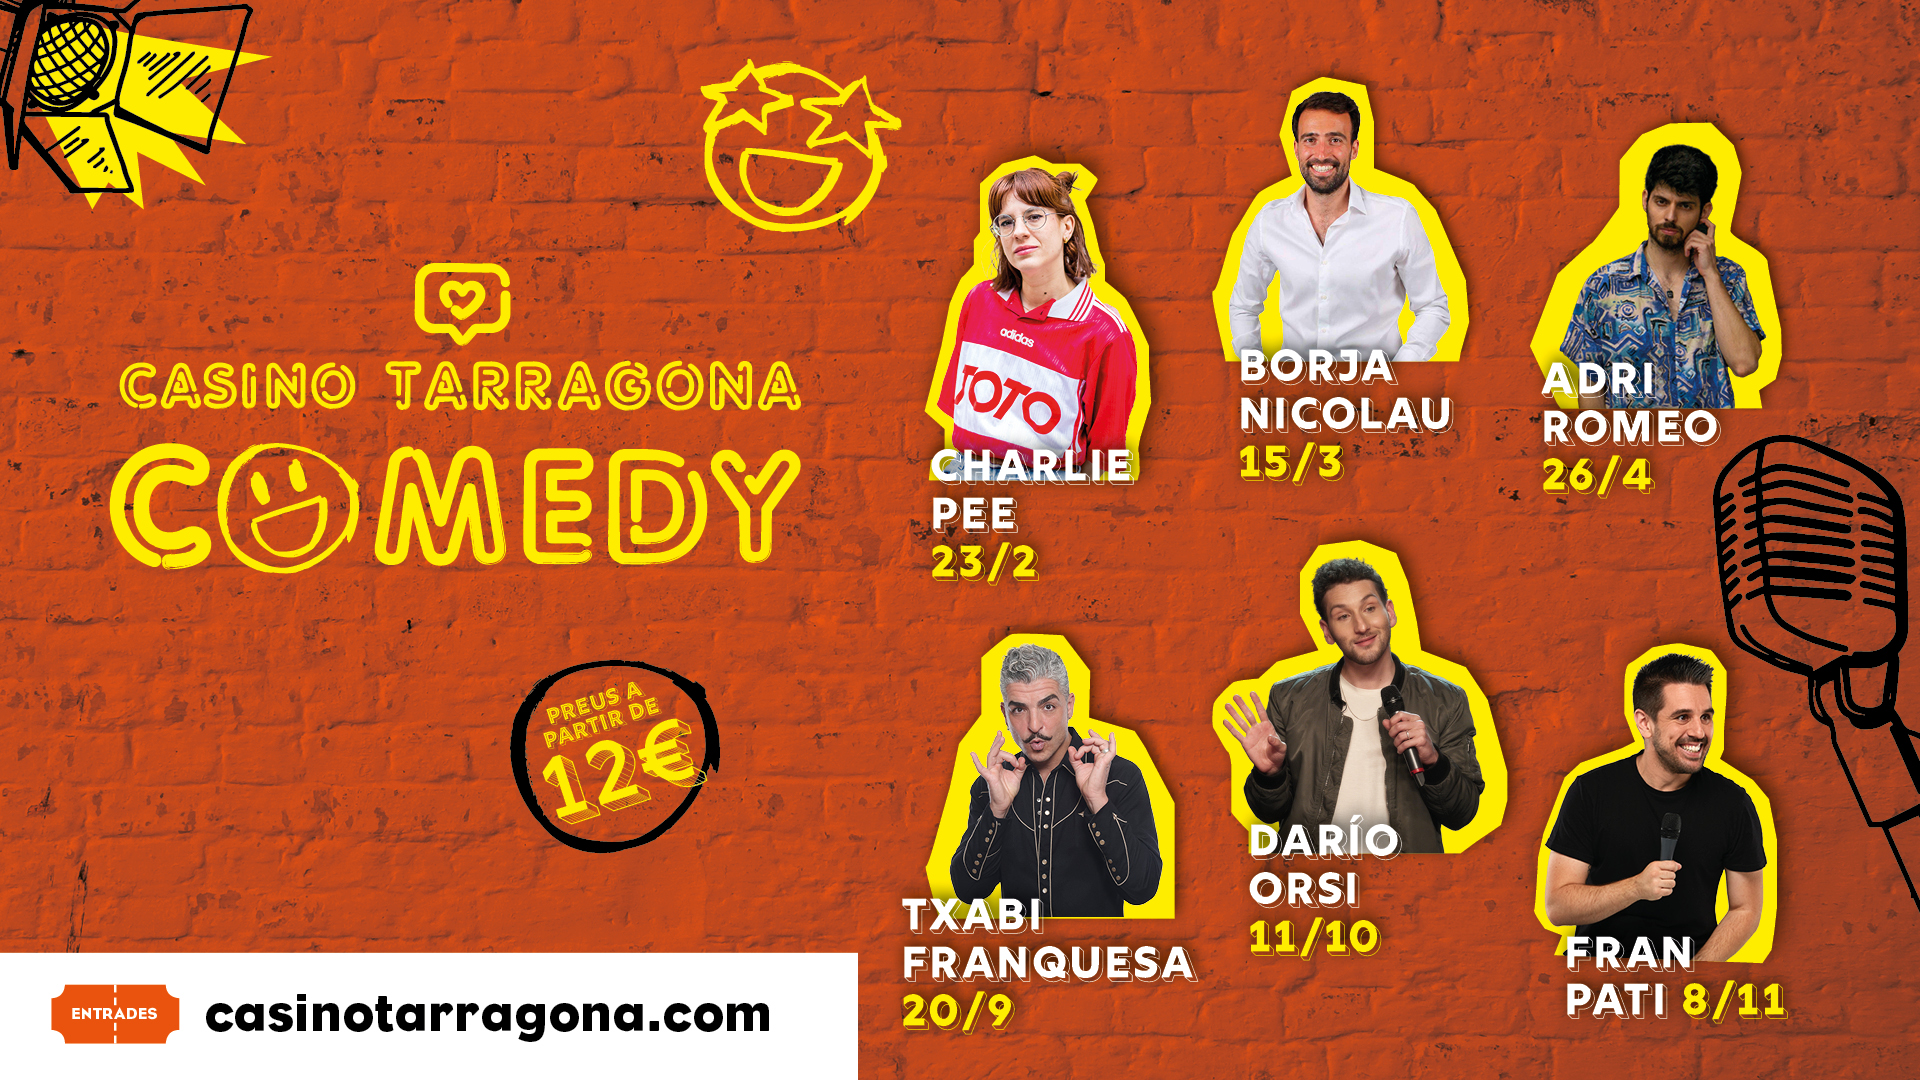 Charlie Pee, Borja Nicolau et Adri Romeo sont les protagonistes de la première étape du cycle de monologues Casino Tarragona Comedy.